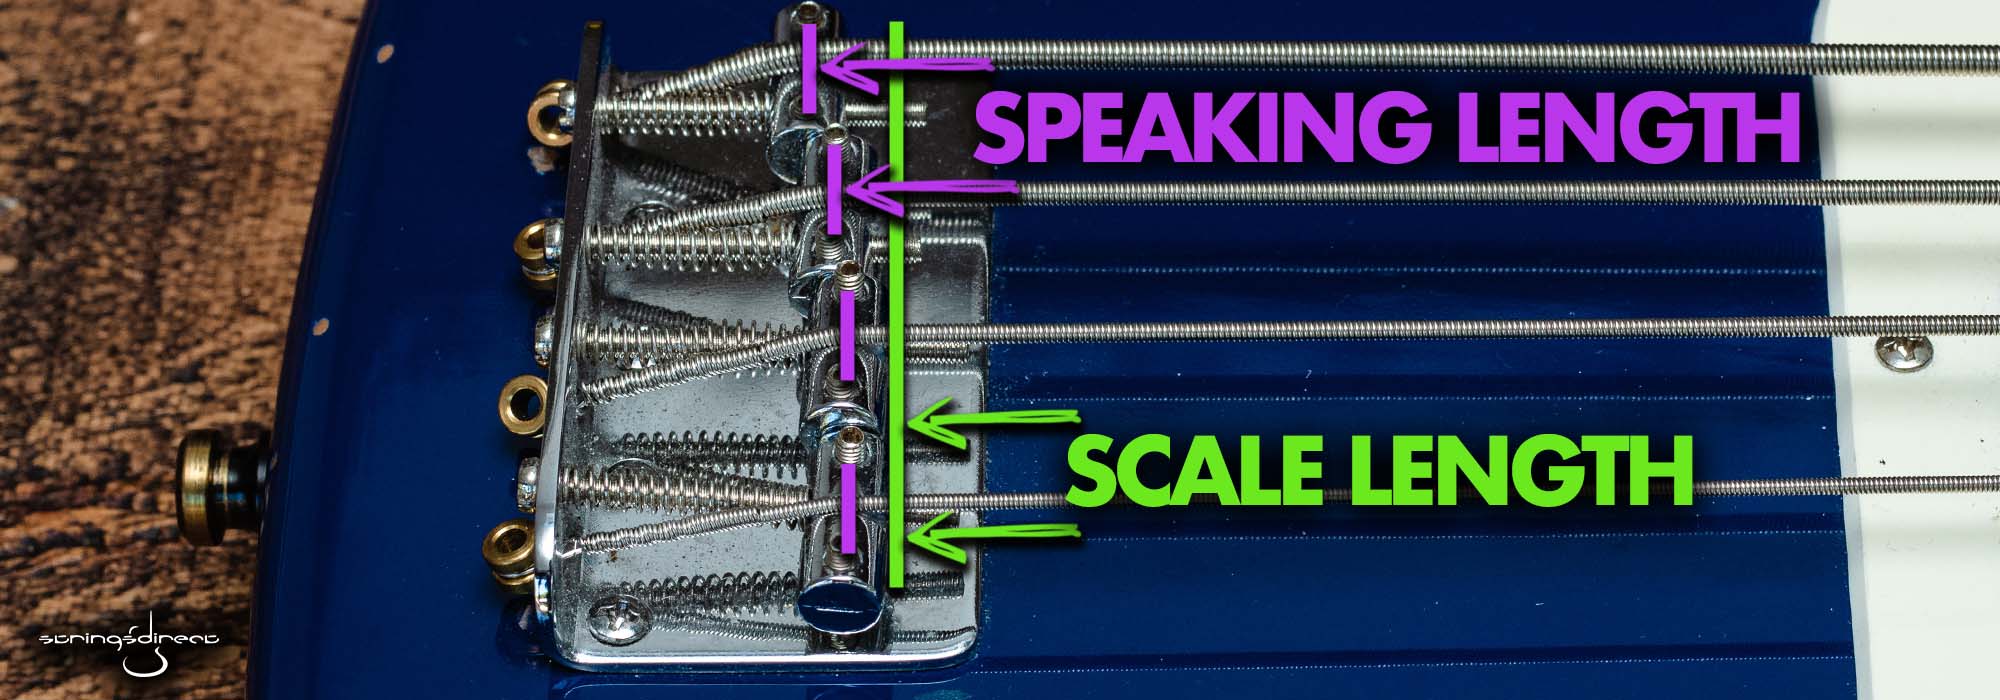 Speaking Length vs Scale Length